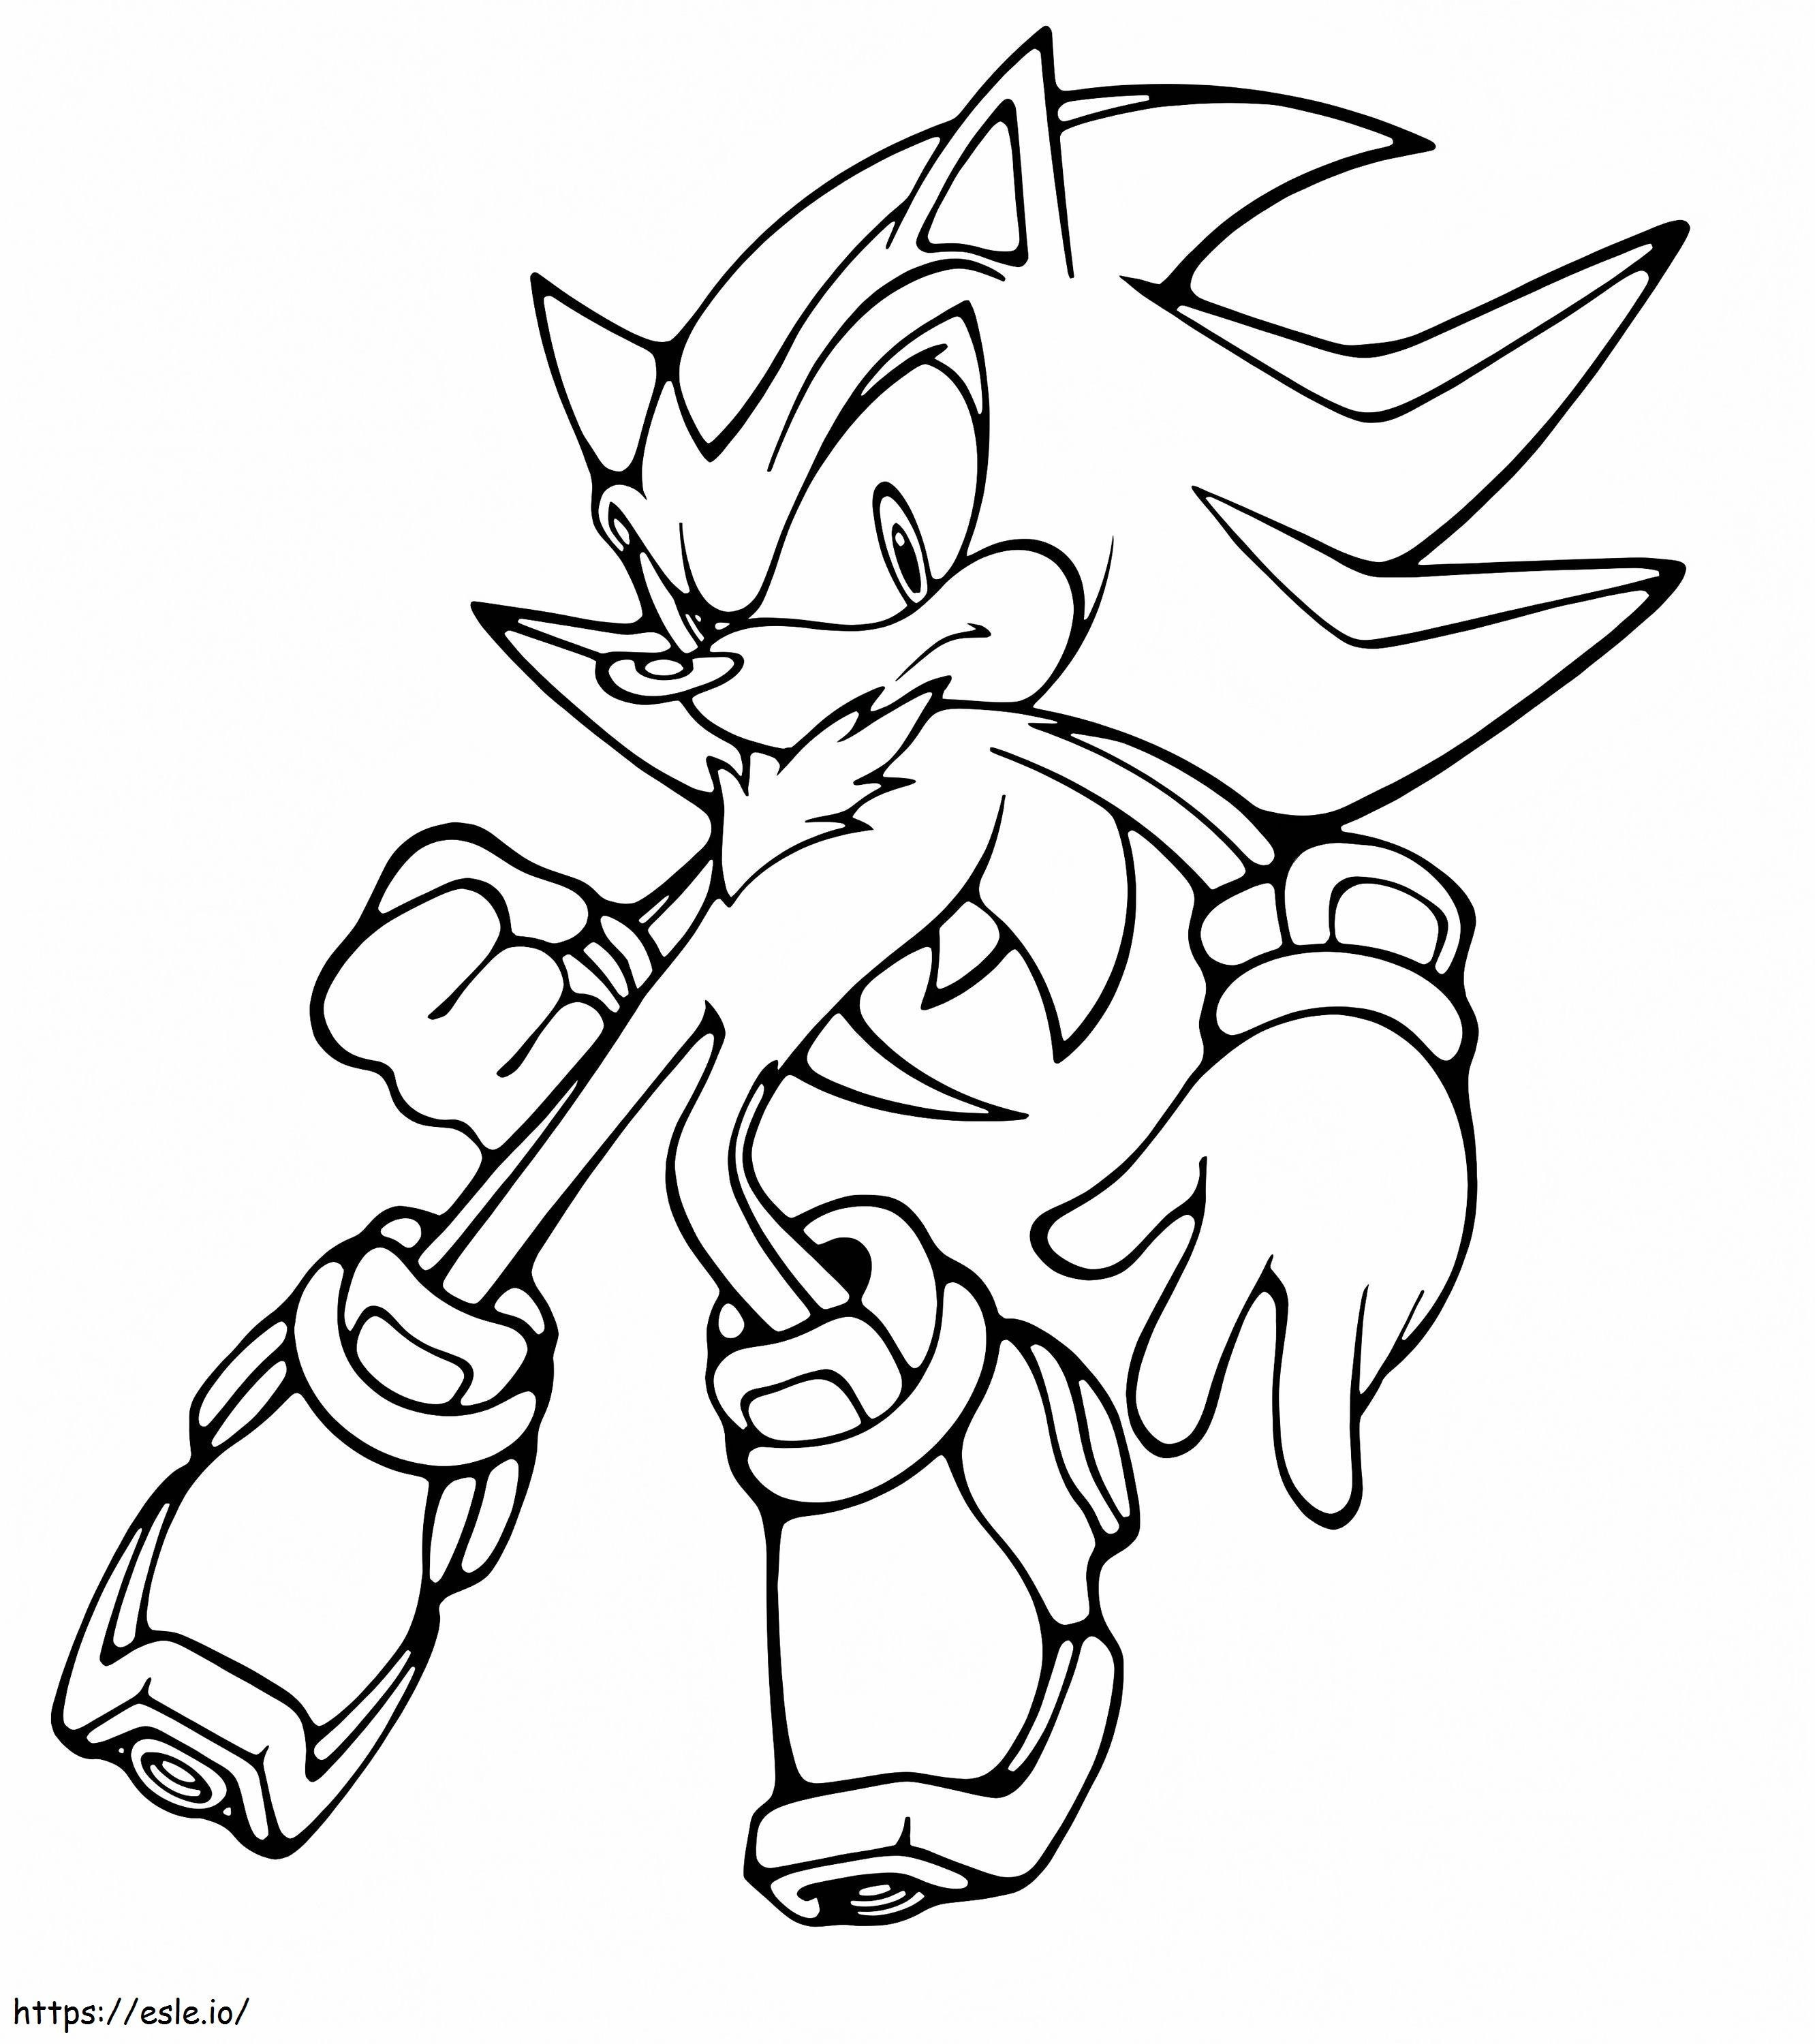 Shadow The Hedgehog z Sonica kolorowanka